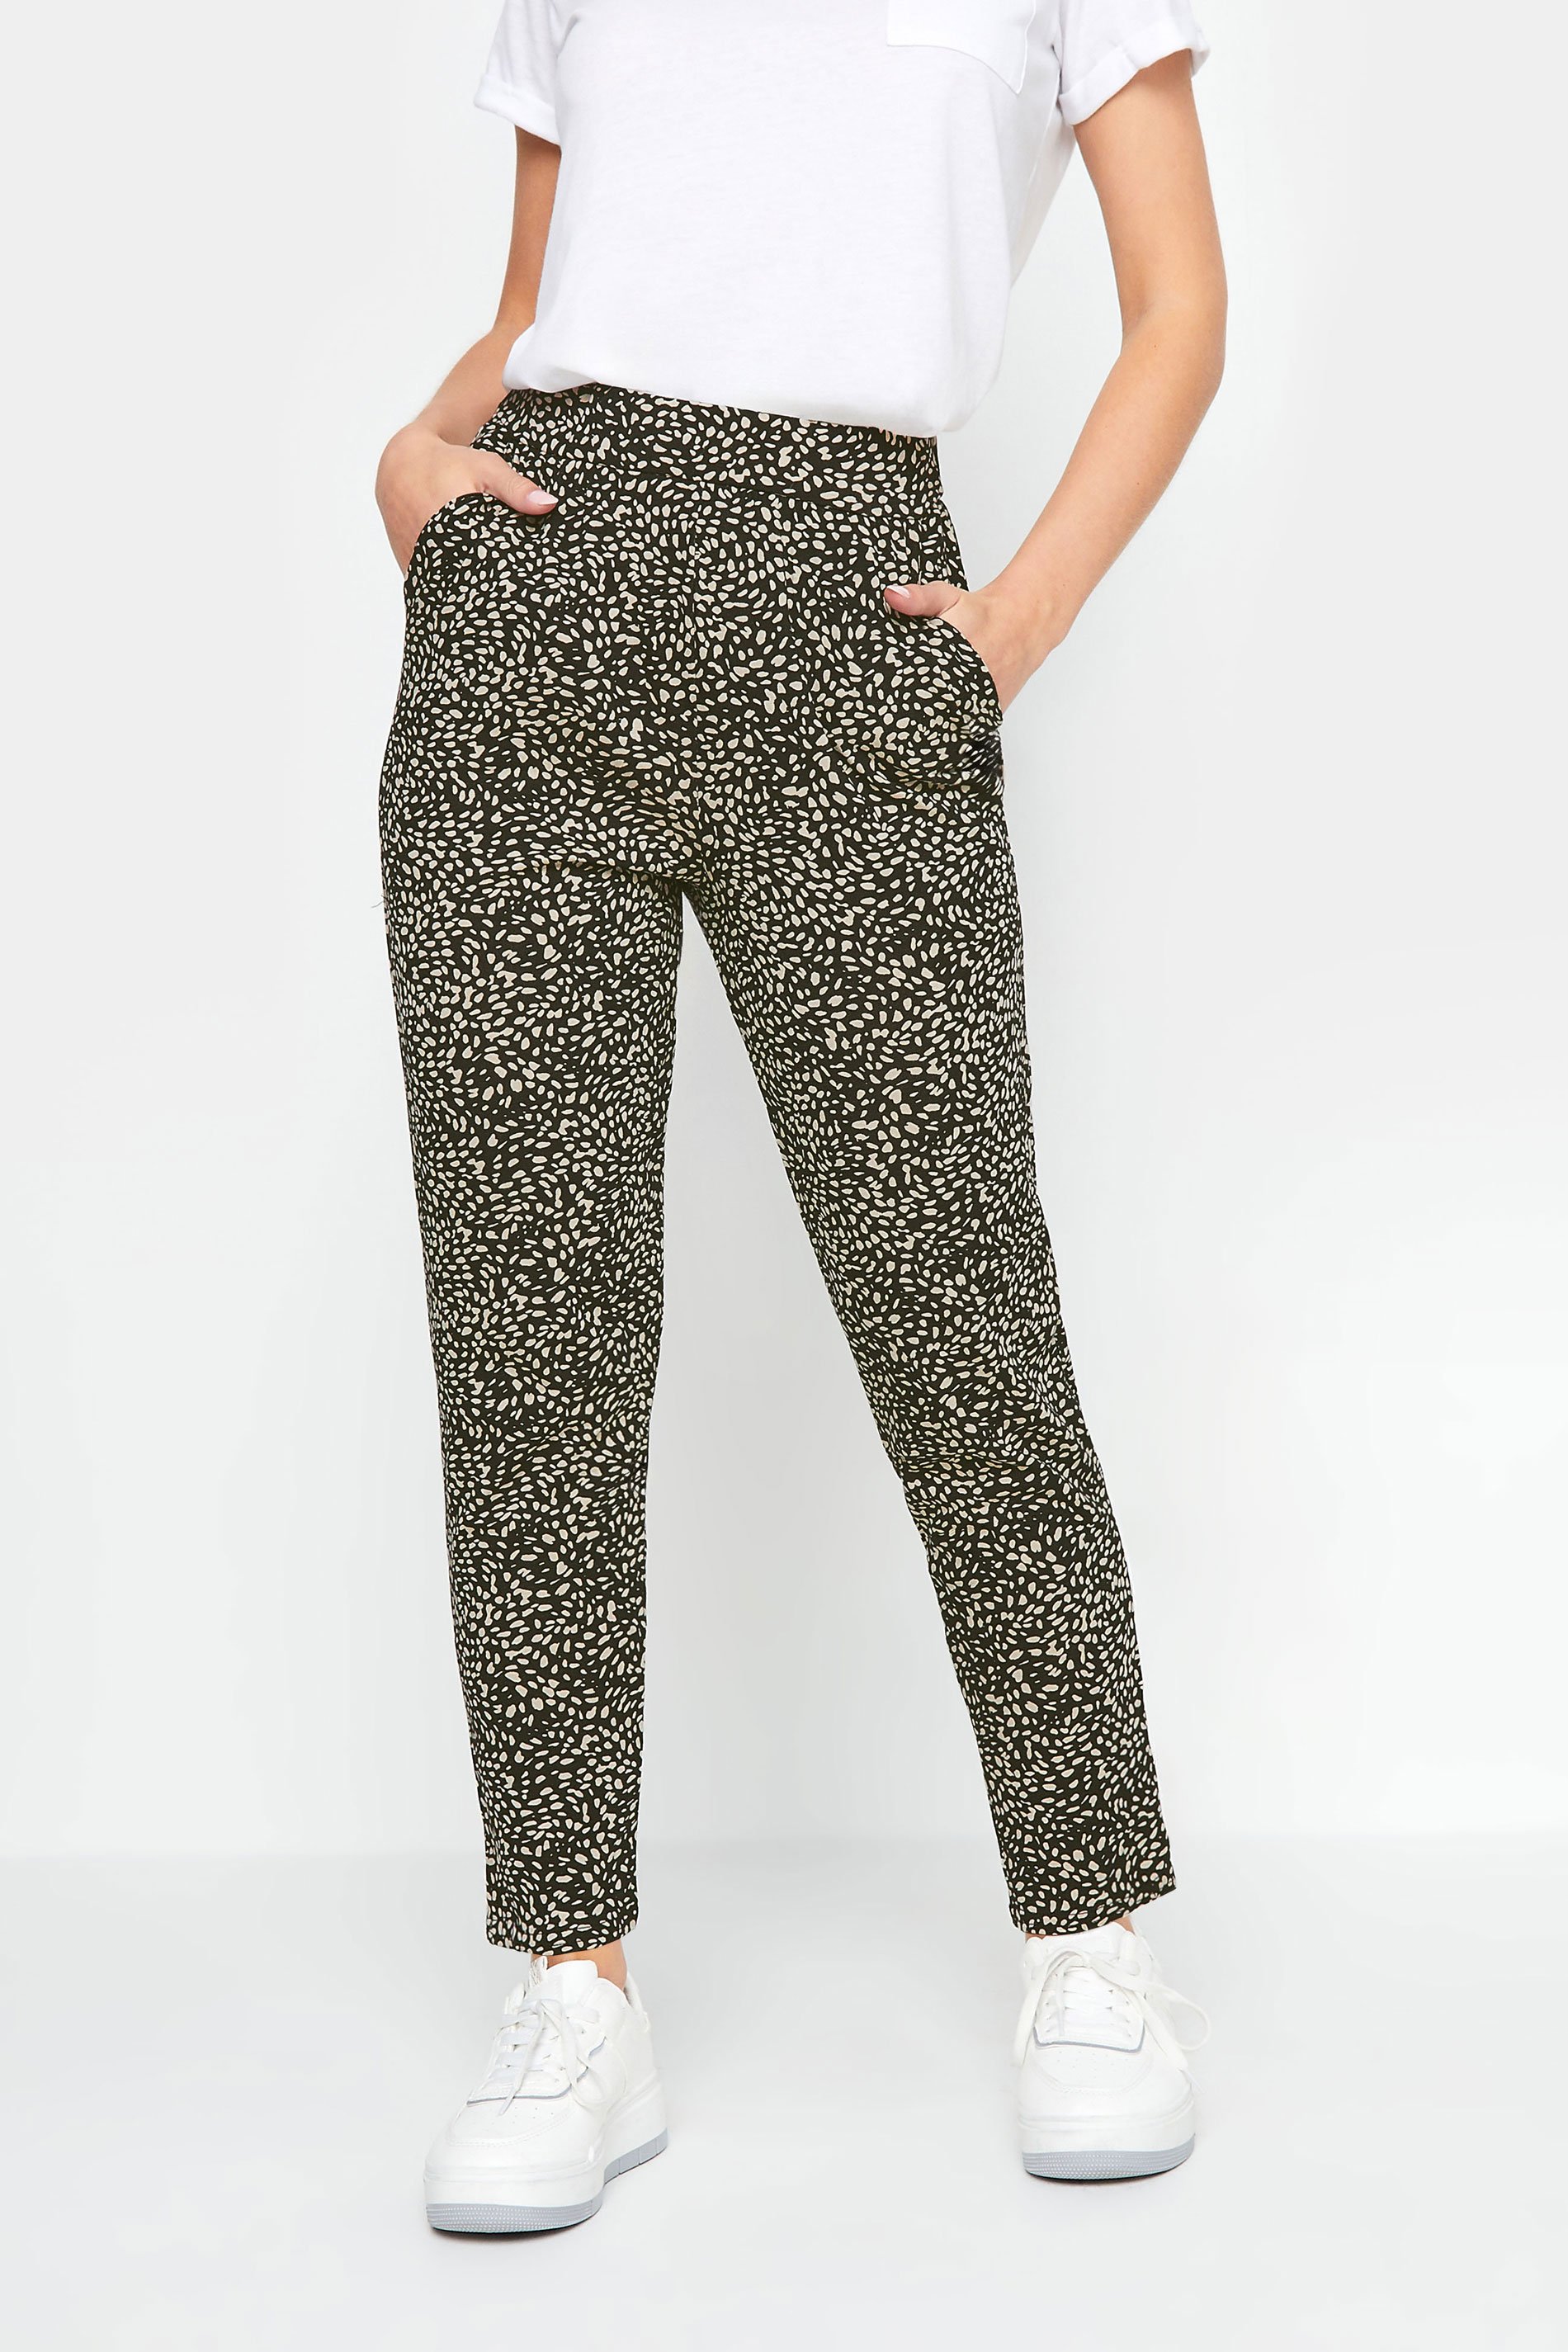 M&Co Petite Natural & Black Spot Print Harem Trousers | M&Co 1